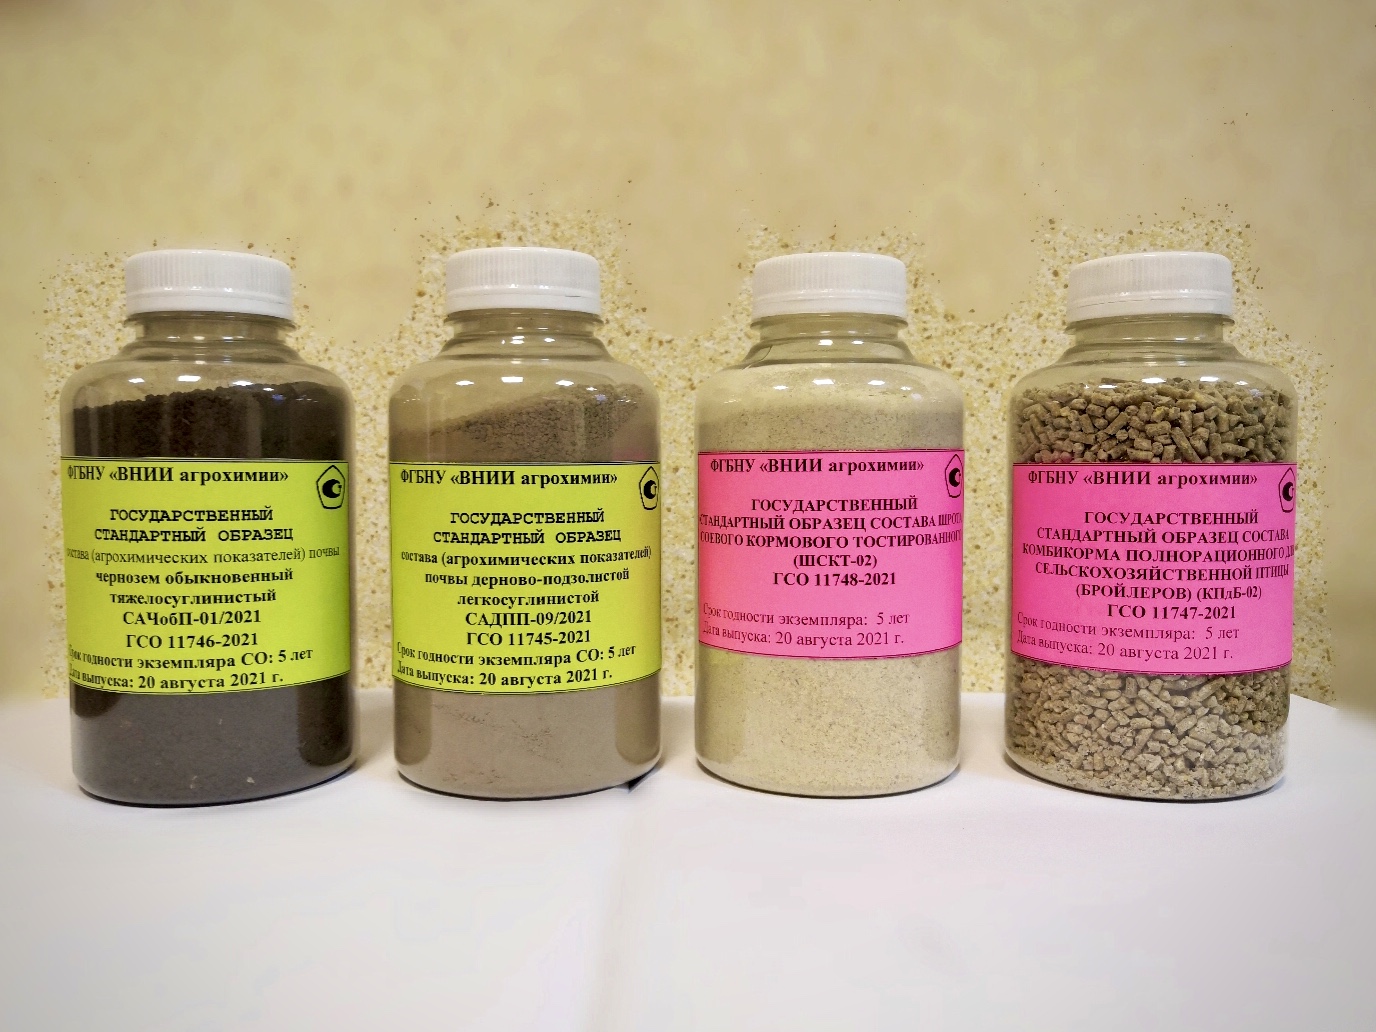 4 новых типа стандартных образцов почв и кормов получили  статус Государственных